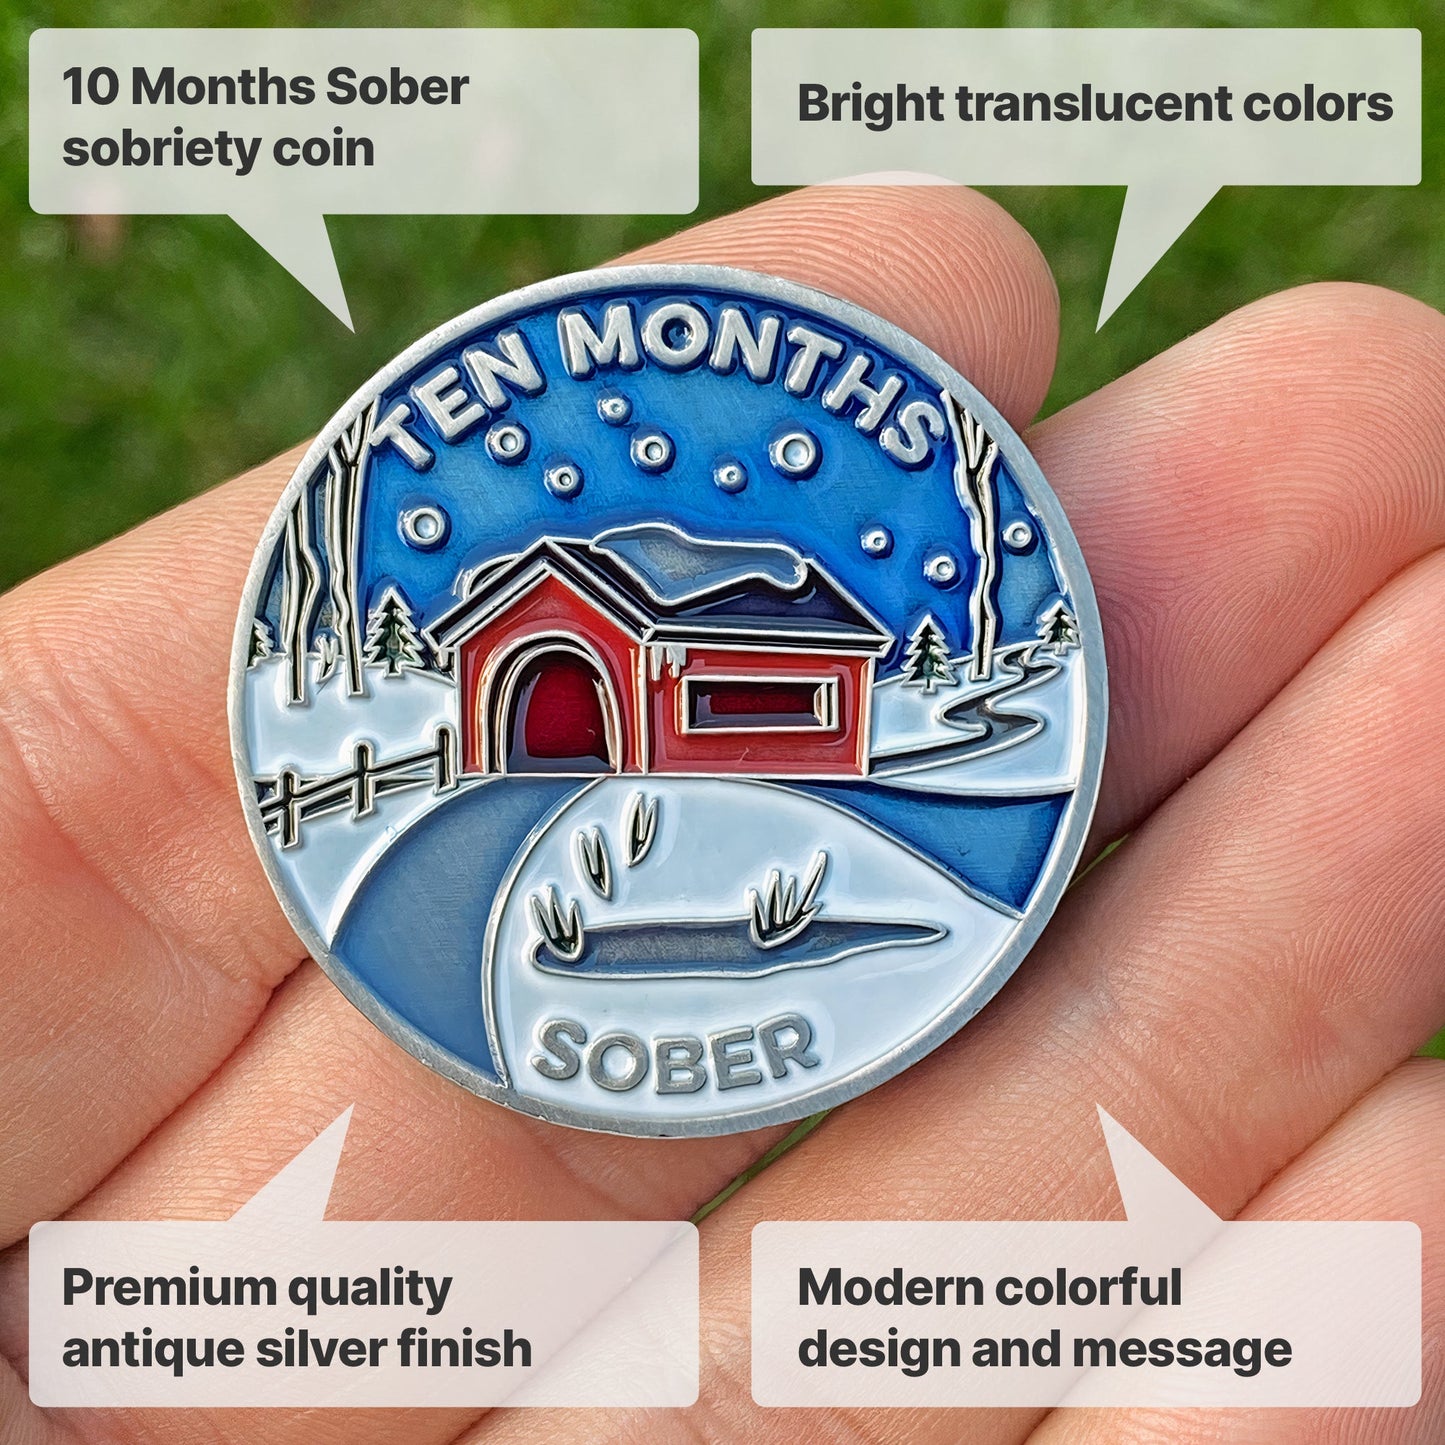 Ten Months Sobriety sobriety coin - The Achieve Mint